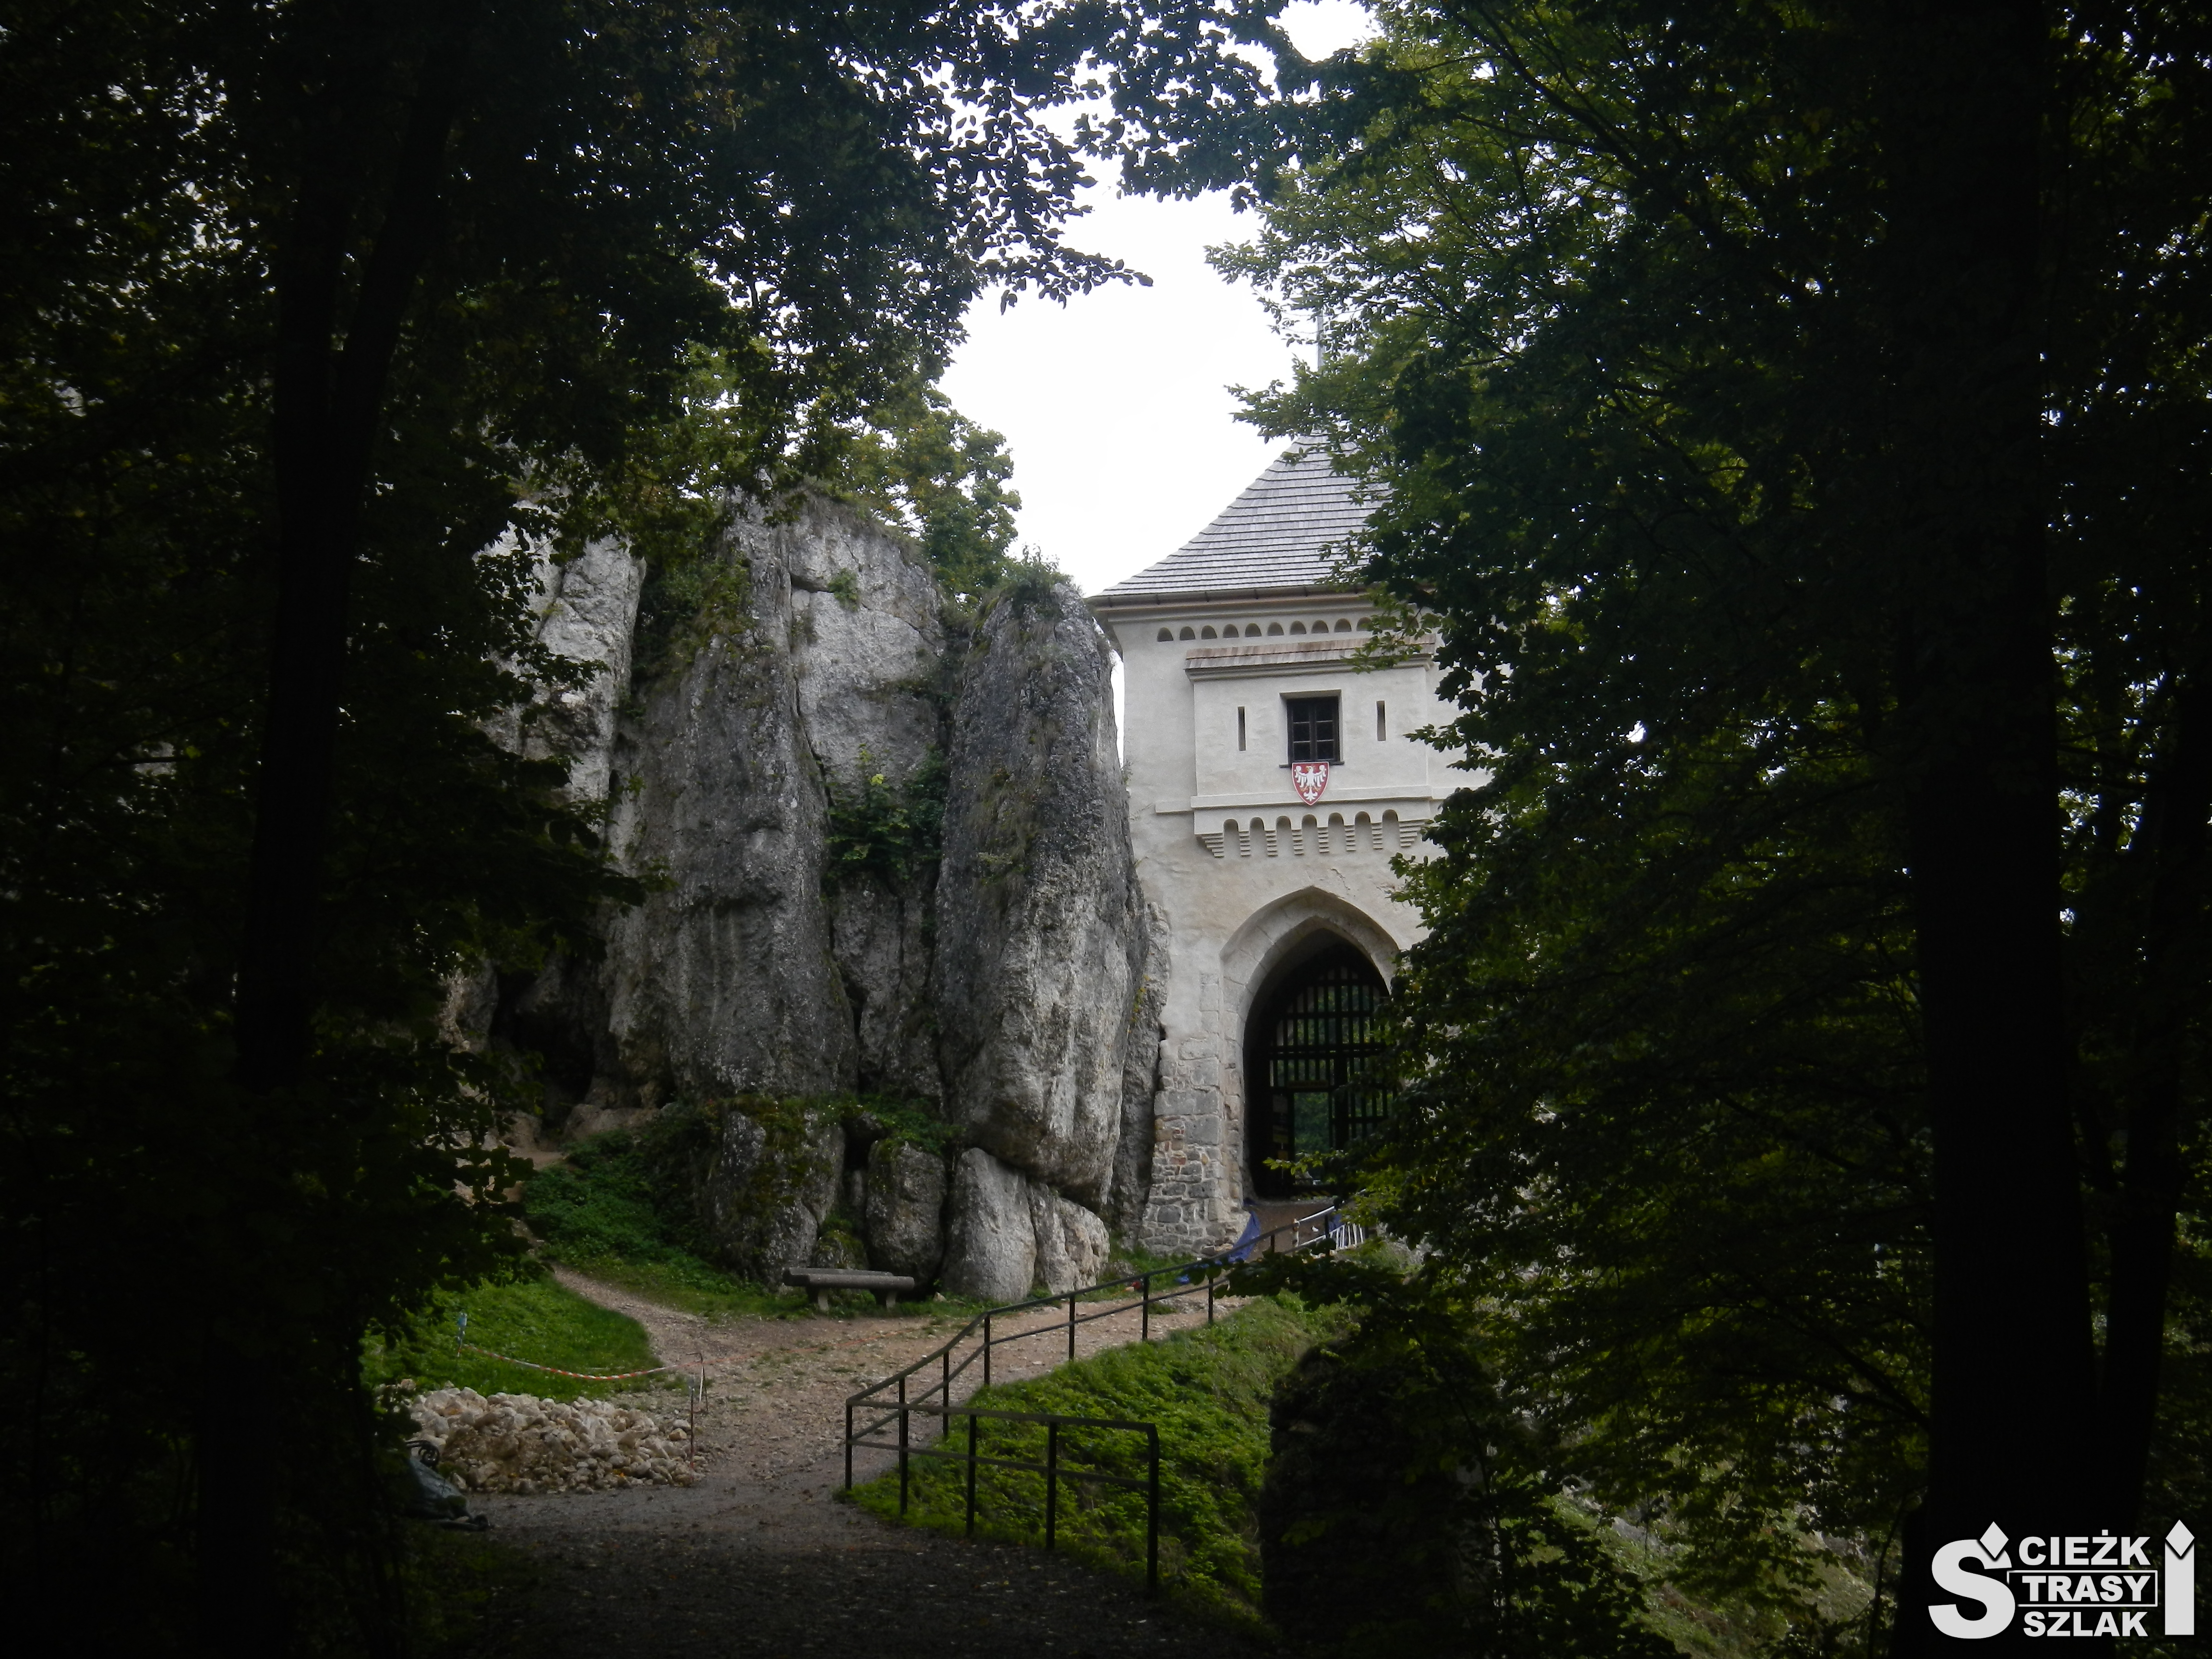 Brama wjazdowa za skałą wapienną prowadząca między drzewami do Ruin Zamku w Ojcowie